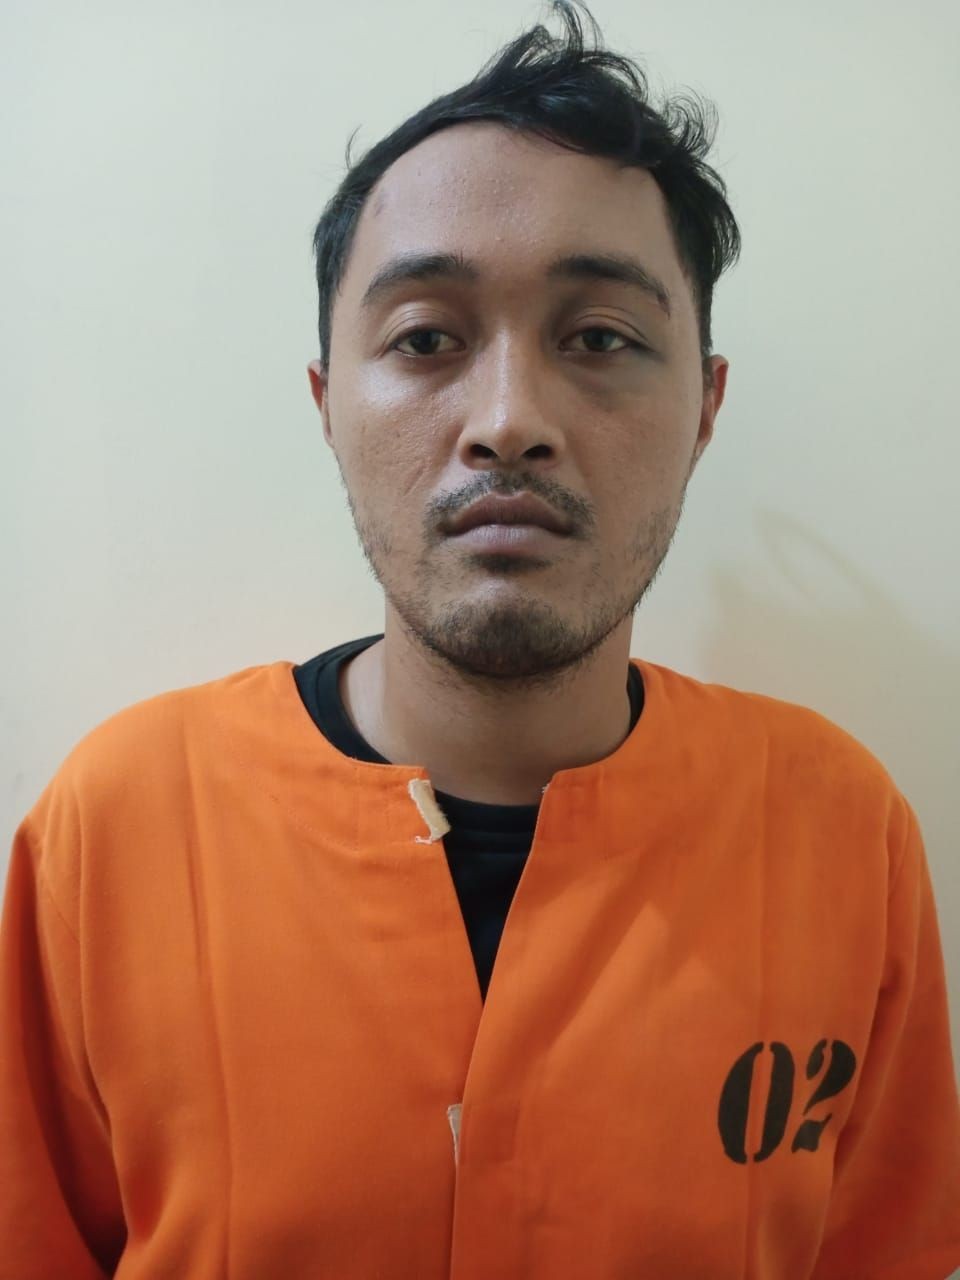 Pria di Bali Todongkan Blakas ke Leher Karyawan Toko Sambil Minta Uang